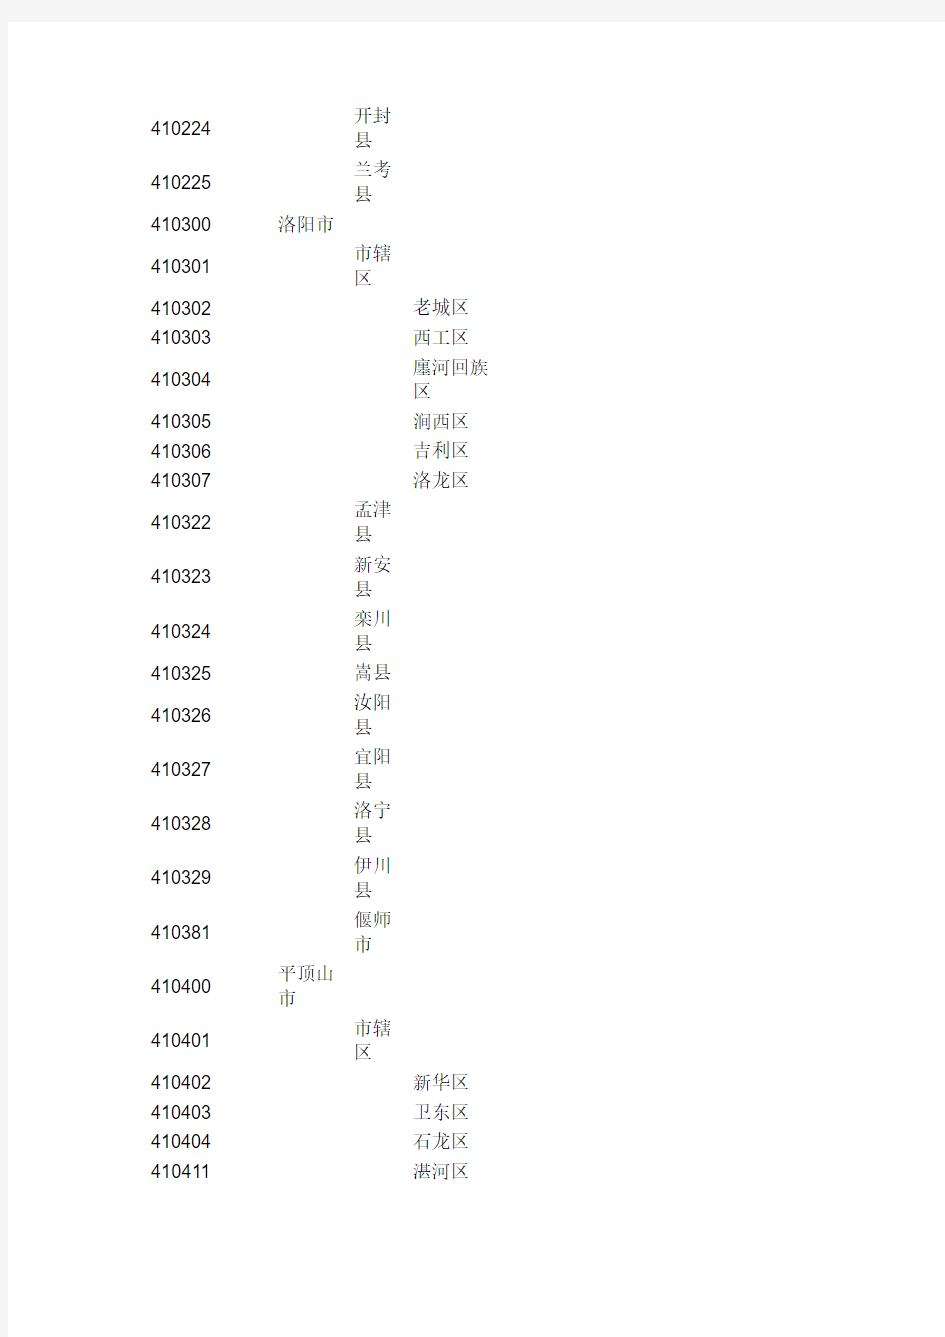 河南省行政区划代码表